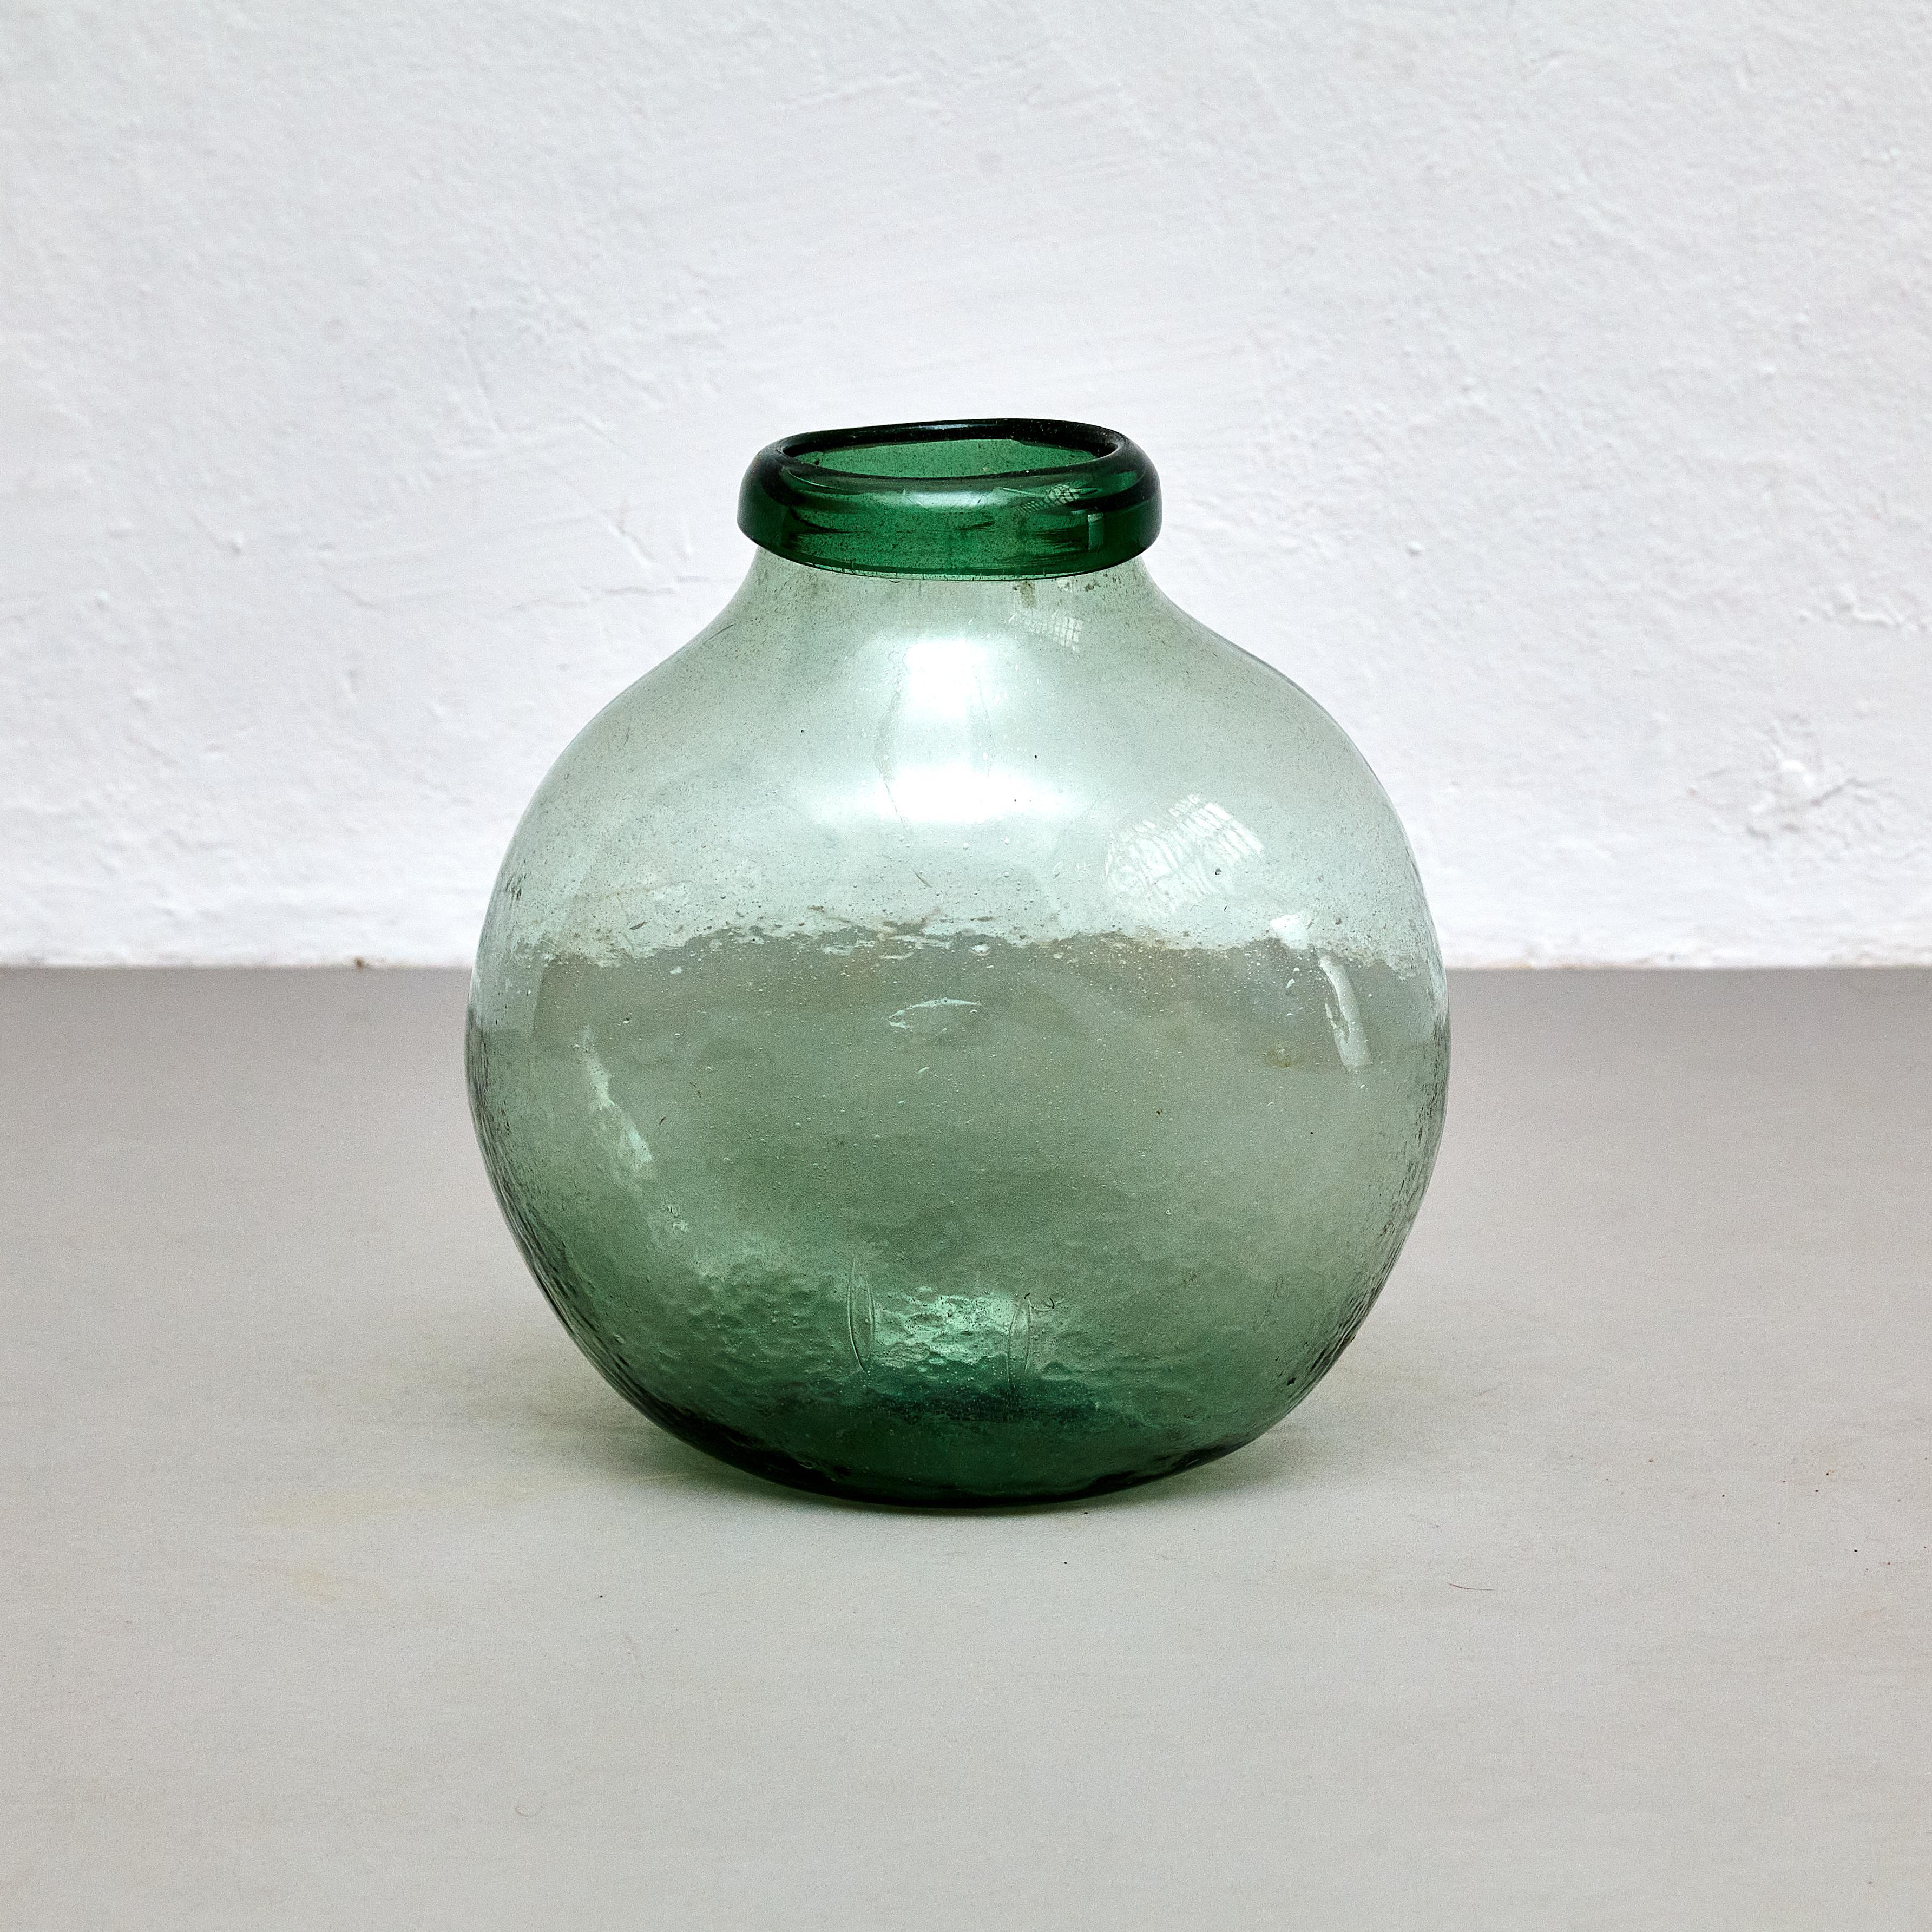 Spanische Glasflaschenvase aus dem frühen 20. Jahrhundert.

Hergestellt in Spanien, ca. 1940.

In ursprünglichem Zustand mit geringen Gebrauchsspuren, die dem Alter und dem Gebrauch entsprechen, wobei eine schöne Patina erhalten